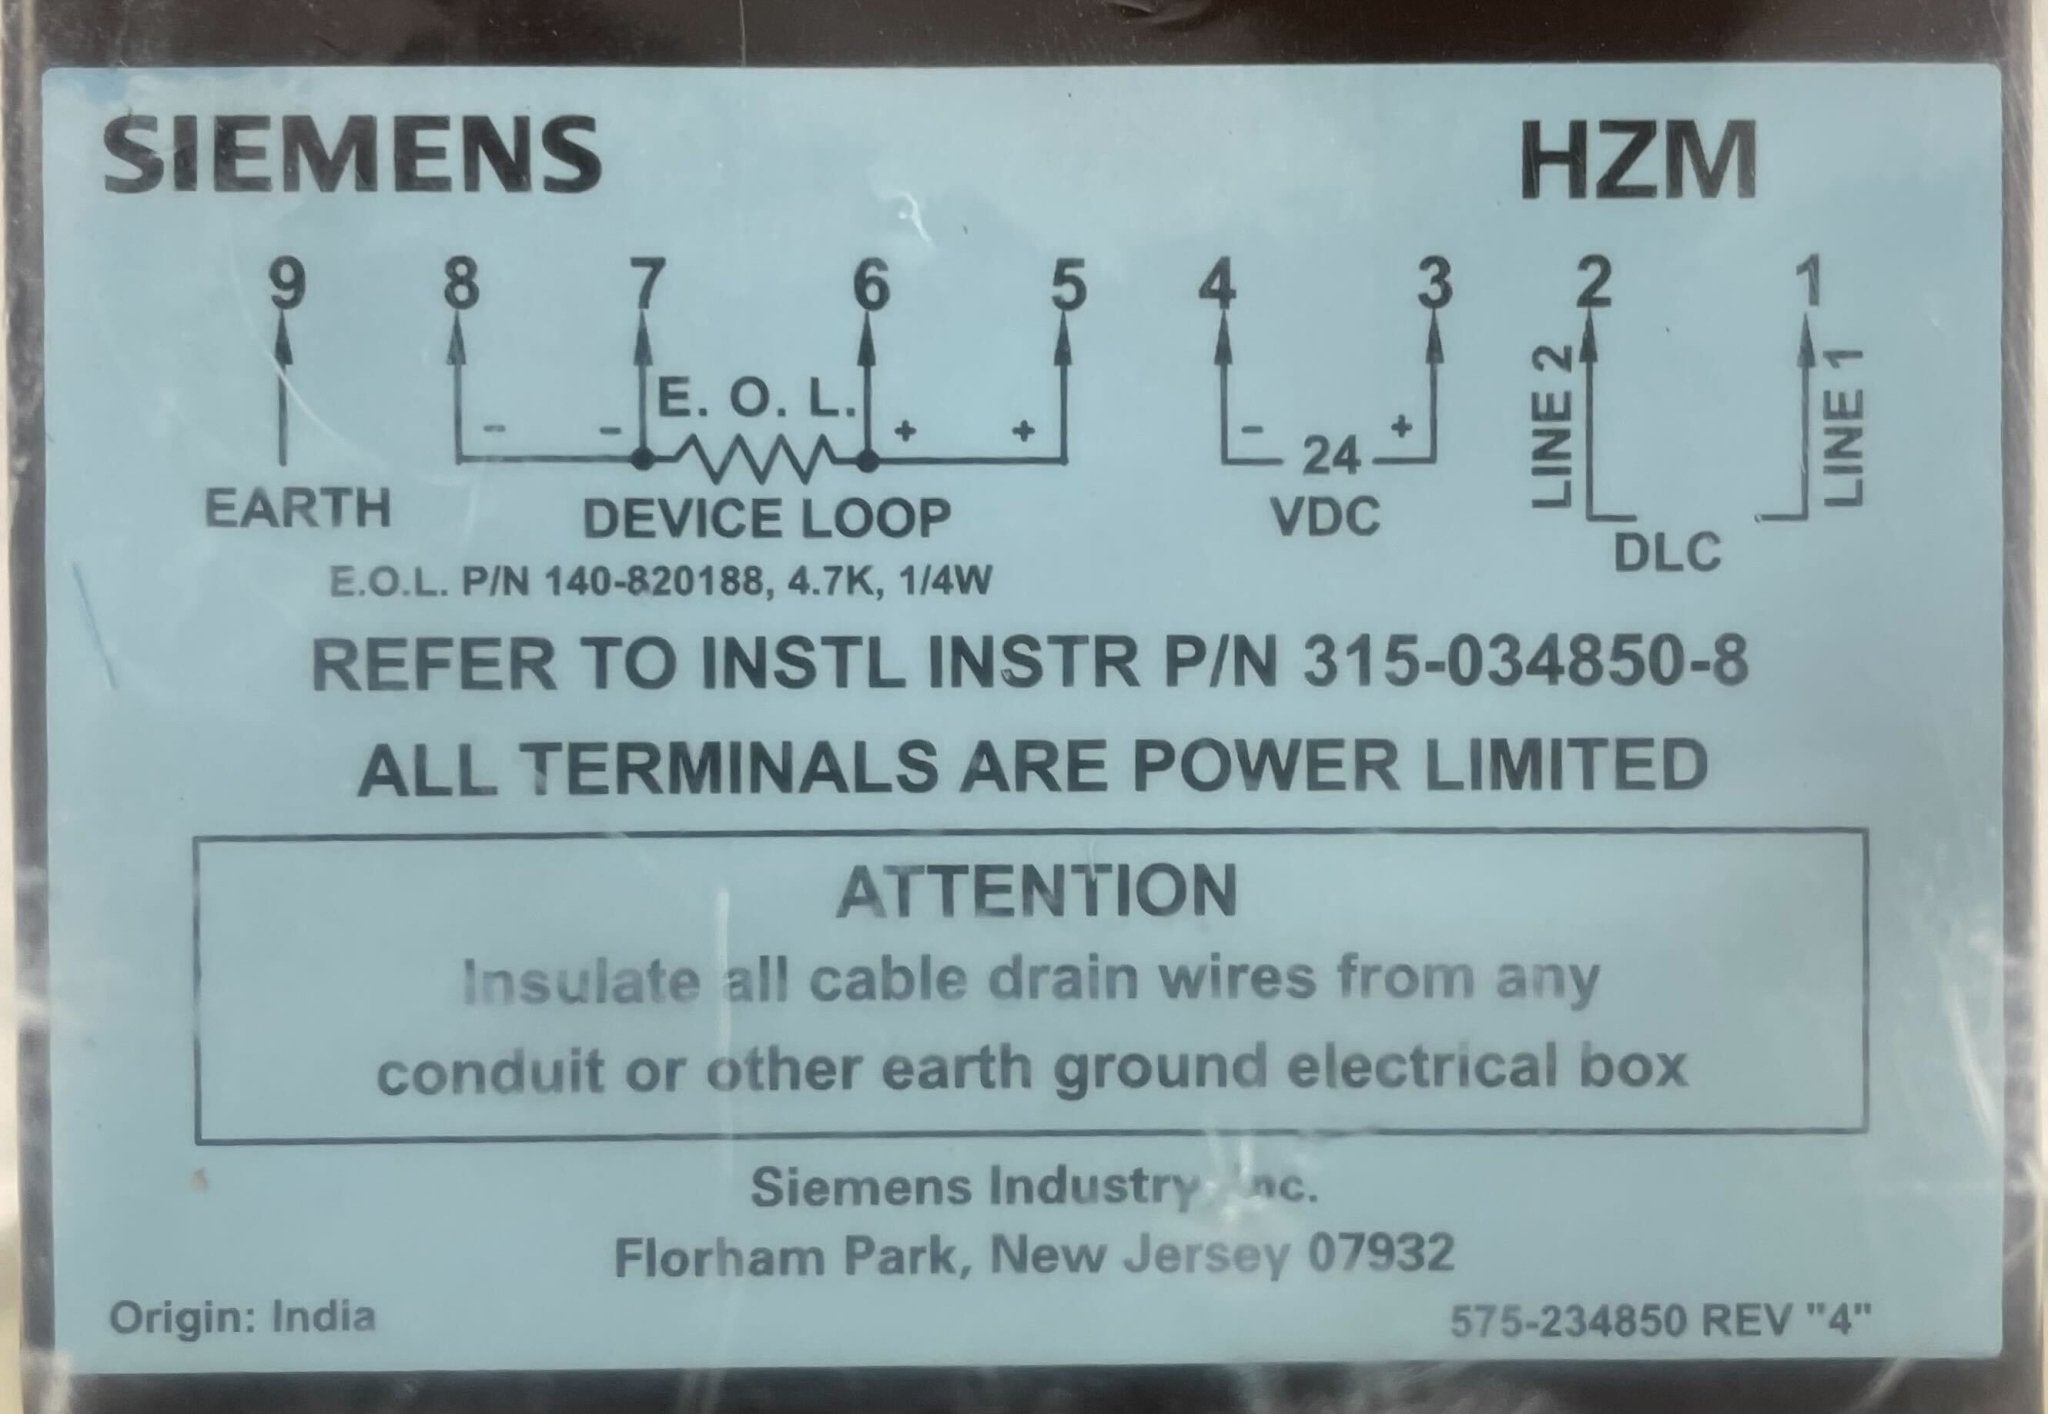 Siemens HZM - The Fire Alarm Supplier